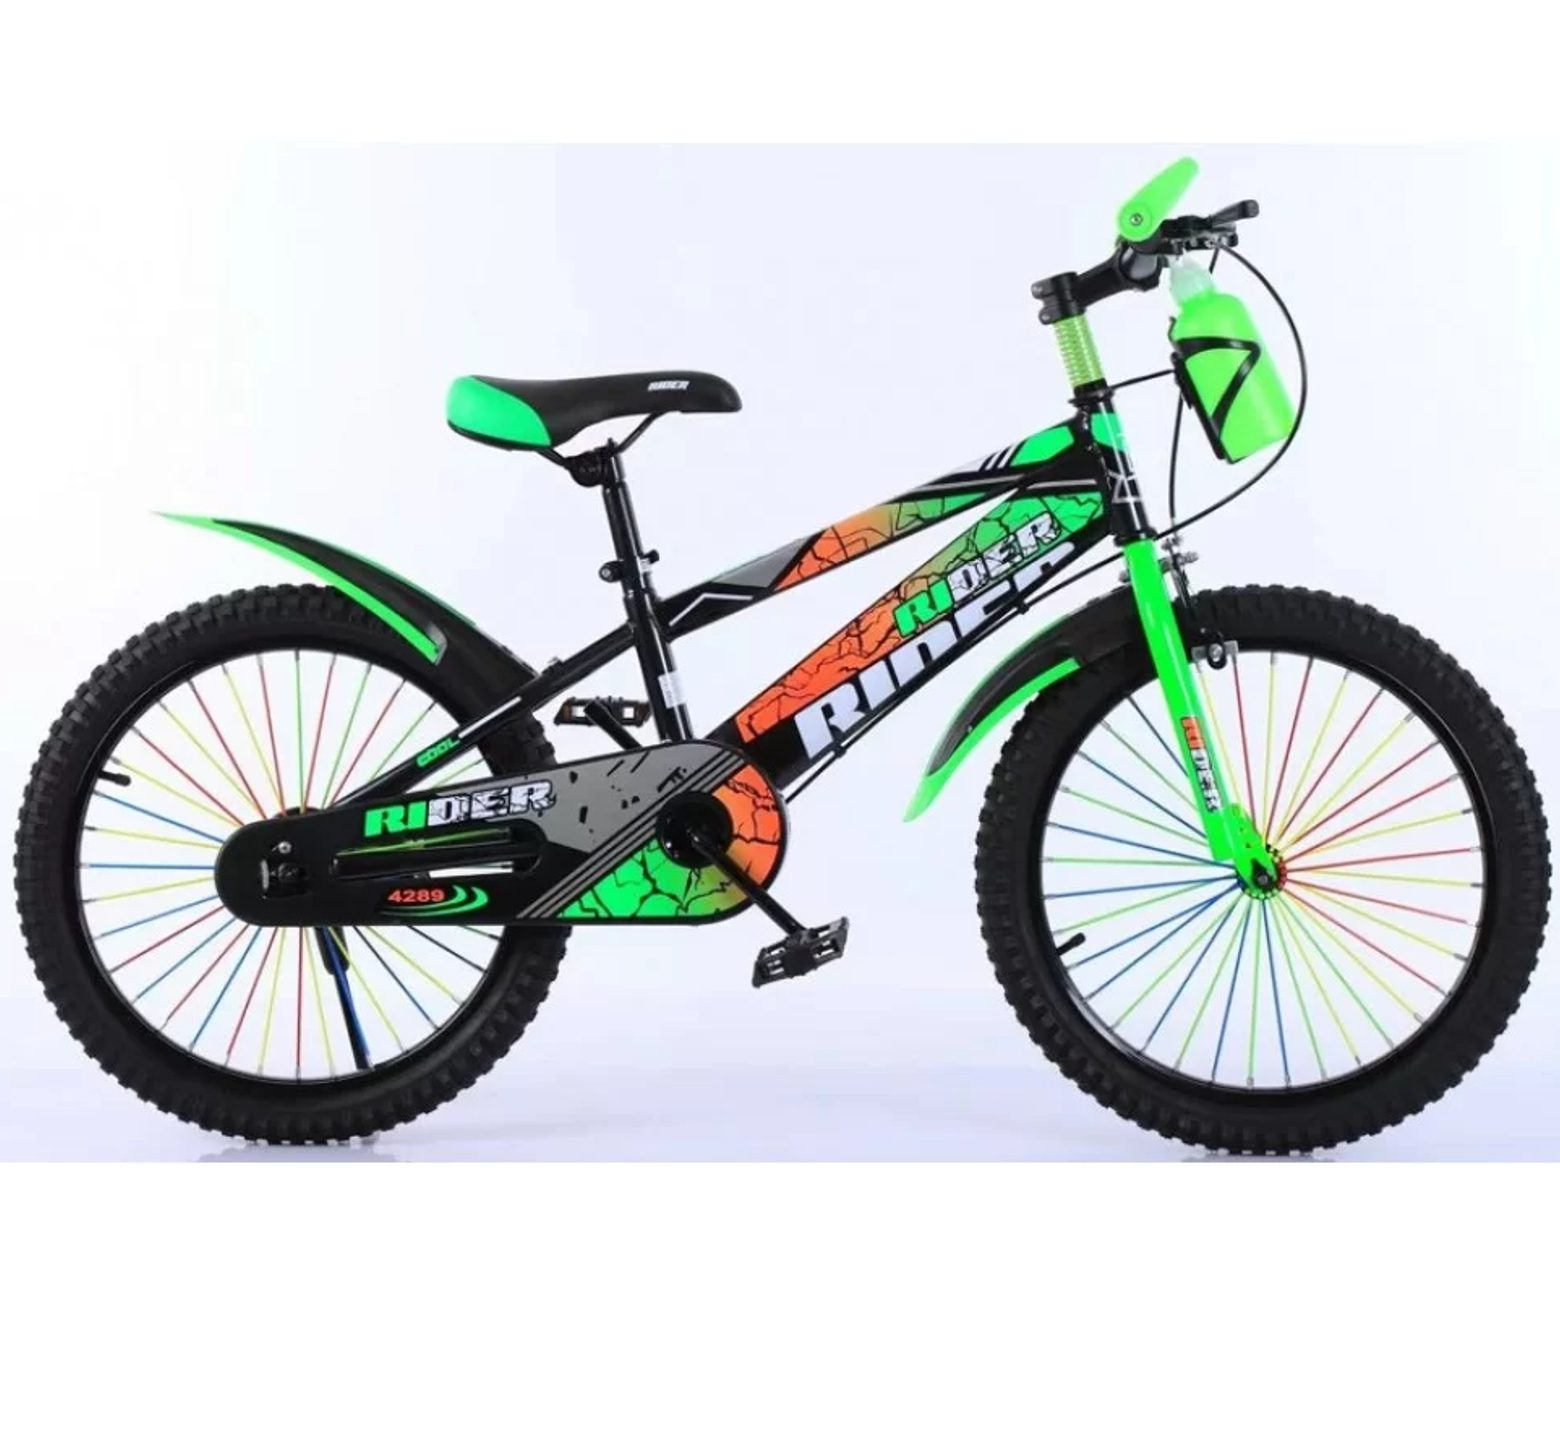 Ποδήλατο Rider 20 ιντσών με παγούρι σε μαύρο πράσινο χρώμα